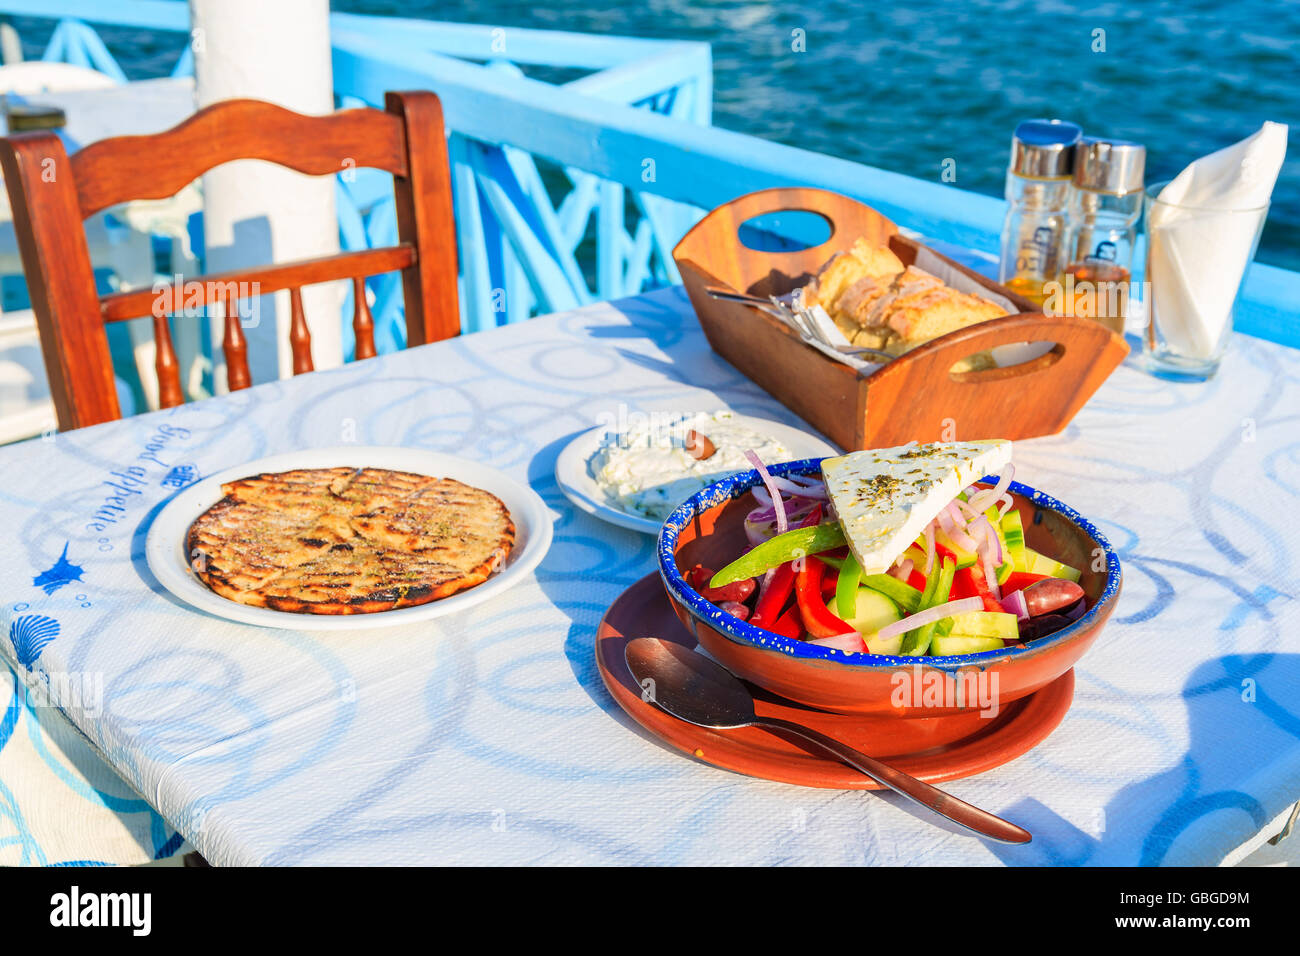 Isola di Samos, Grecia - Sep 20, 2015: insalata greca sulla tavola in taverna tradizionale con il mare blu acqua in background su Samos islan Foto Stock